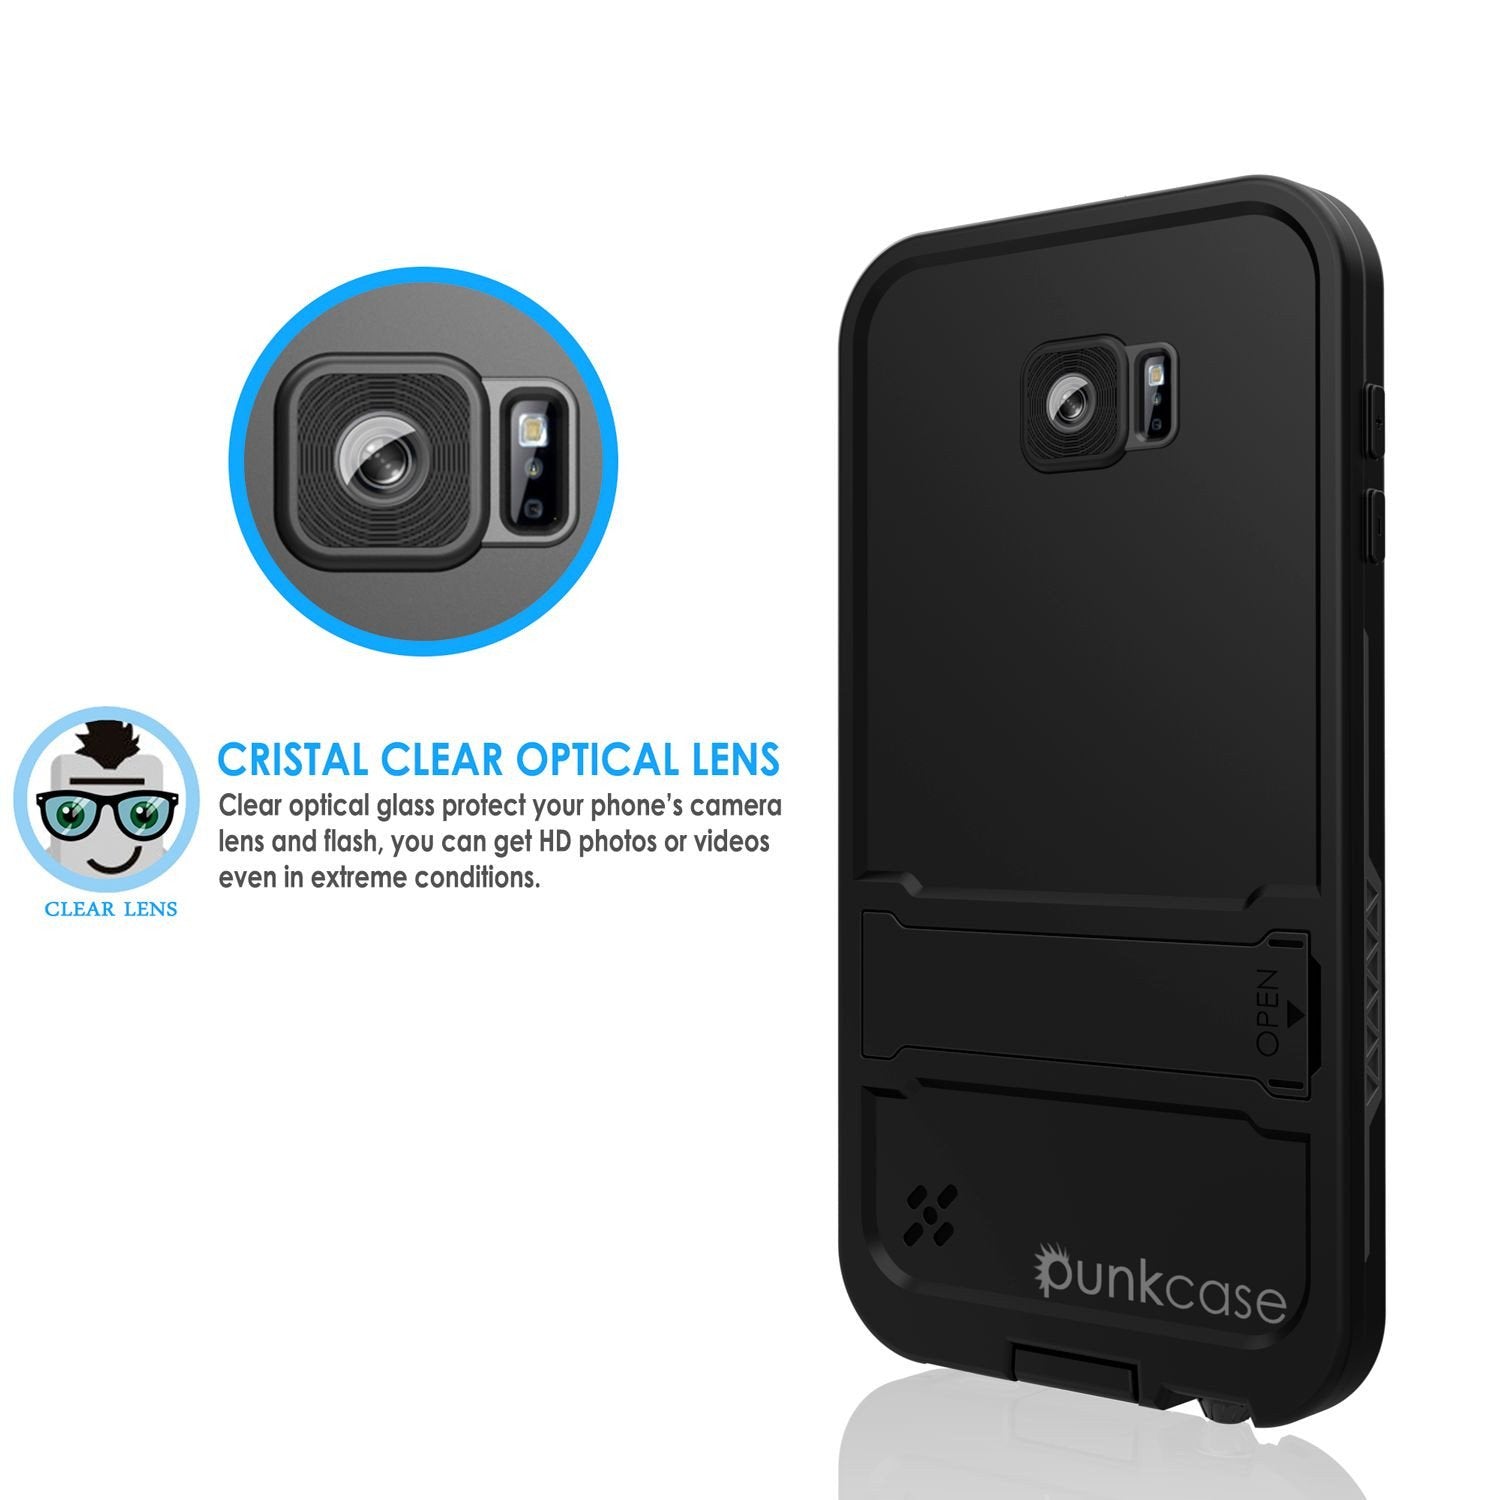 Galaxy S6 Waterproof Case, Punkcase SpikeStar Black Water/Shock/Dirt/Snow Proof | Lifetime Warranty